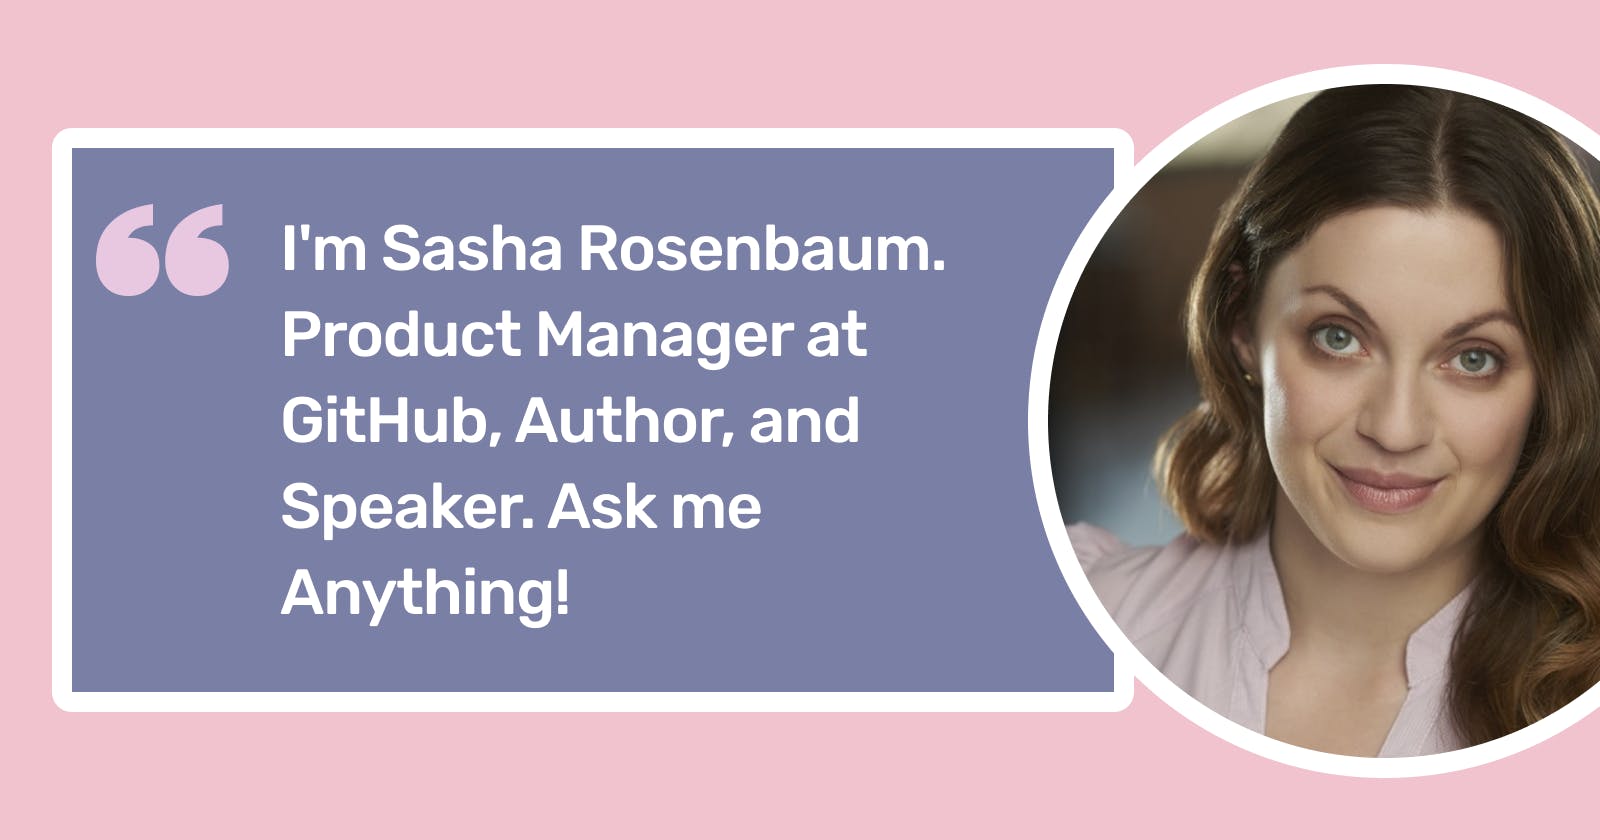 AMA: I'm Sasha Rosenbaum. Product Manager at GitHub, Author, and Speaker. Ask me Anything!